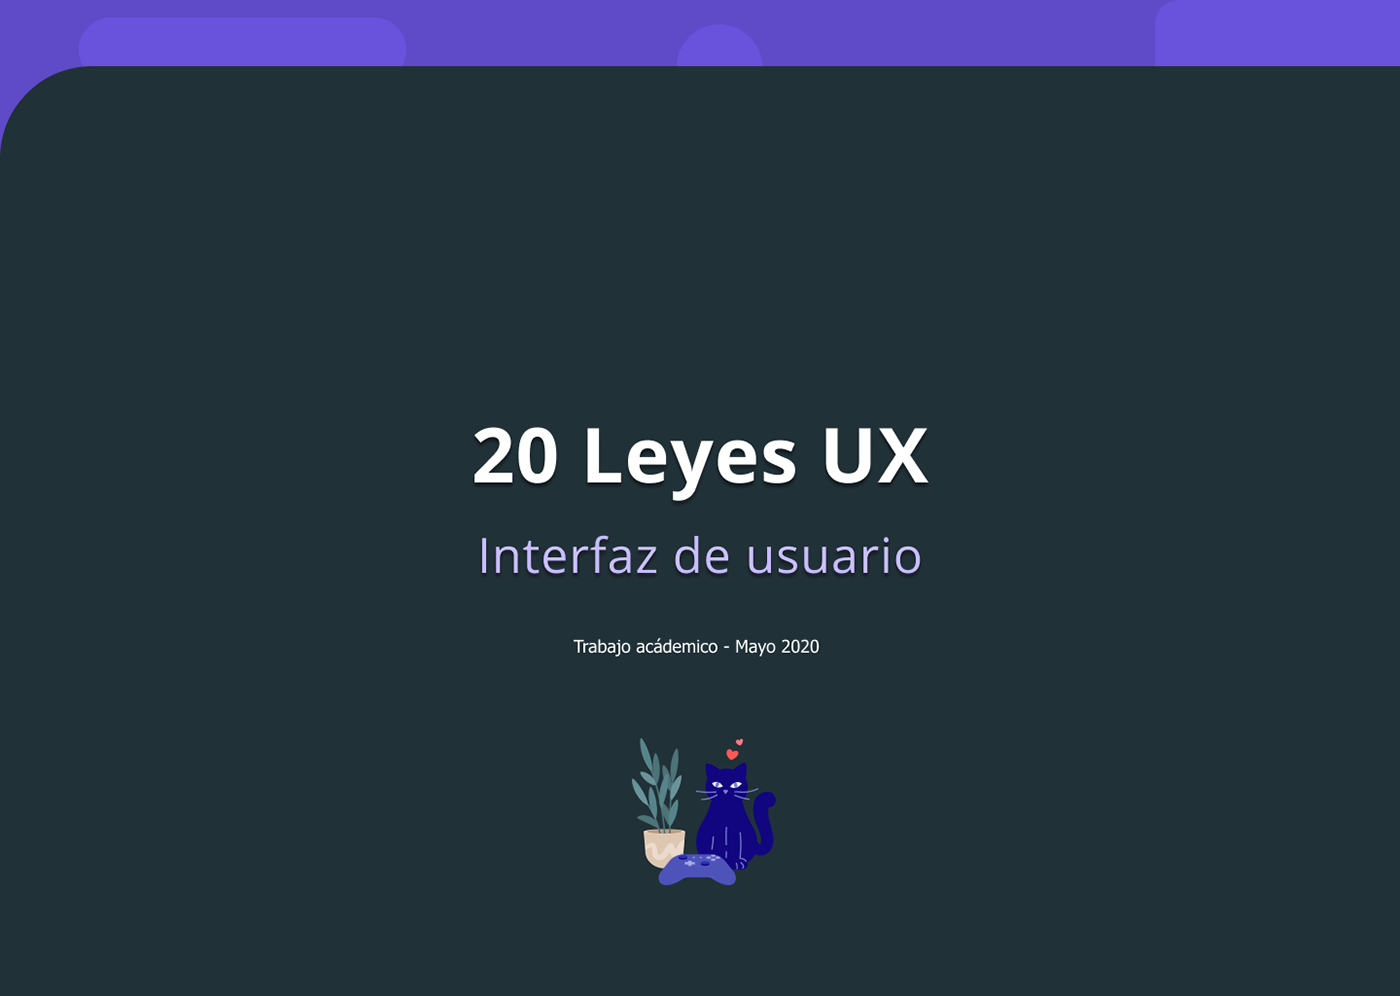 examples Experiencia de usuario gestalt intefaz de usuario Laws of UX leyes mobile UI ux yablonski